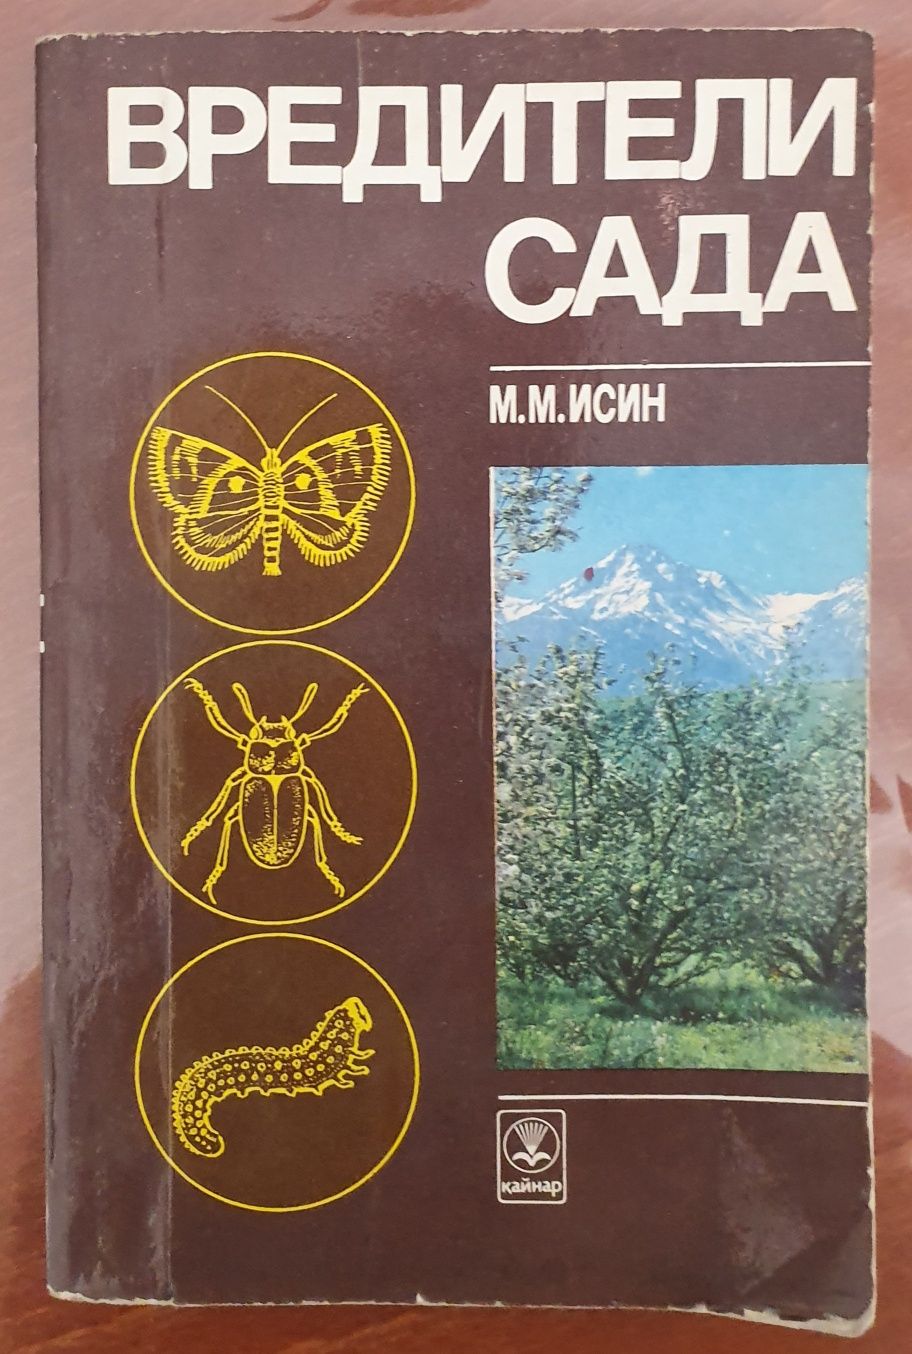 Книги и справочники по садоводству советские